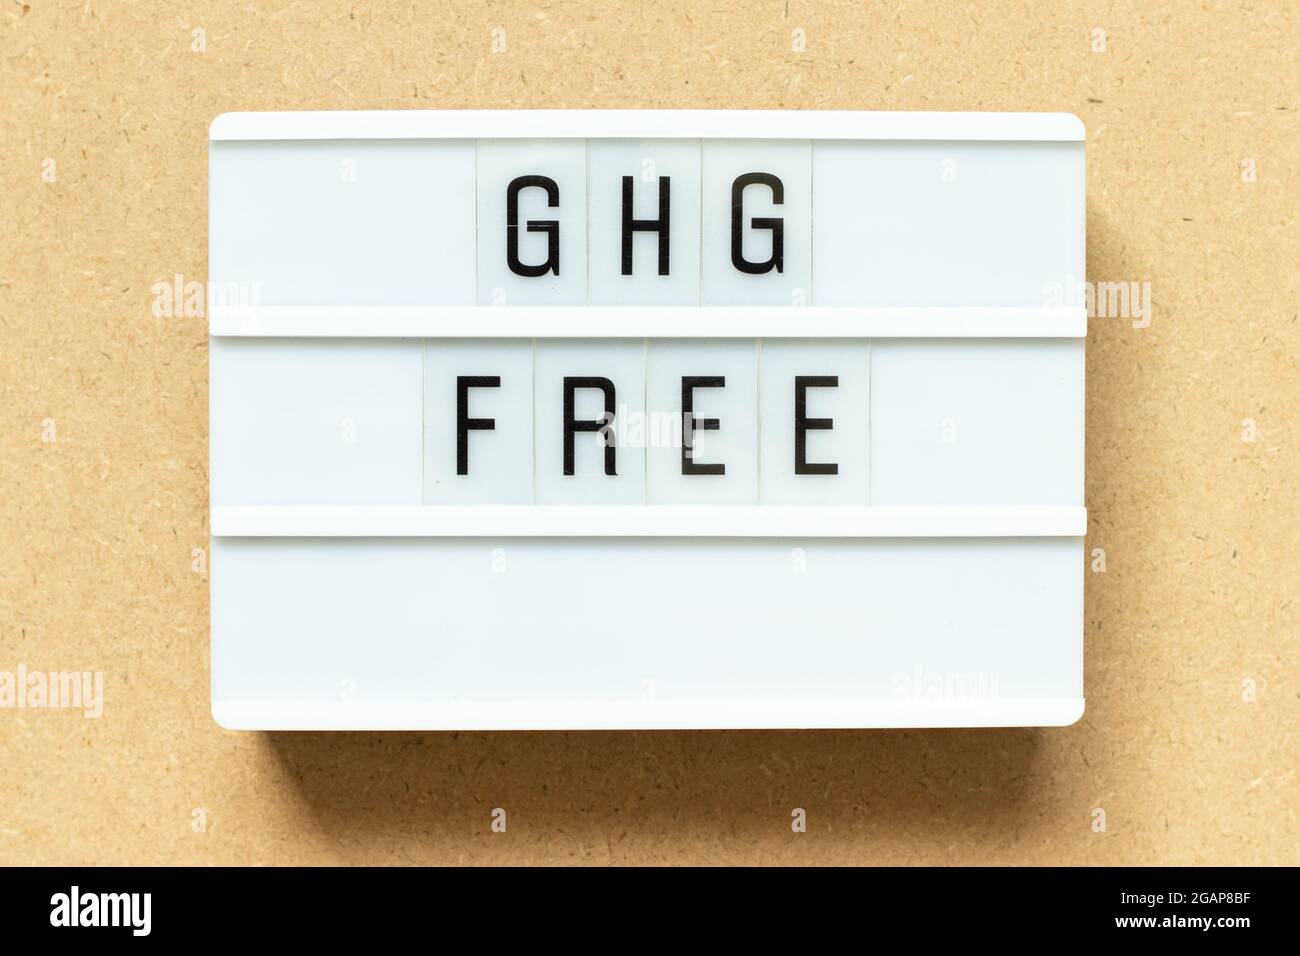 Visionneuse avec mot GHG (abréviation de gaz à effet de serre) libre sur fond de bois Banque D'Images